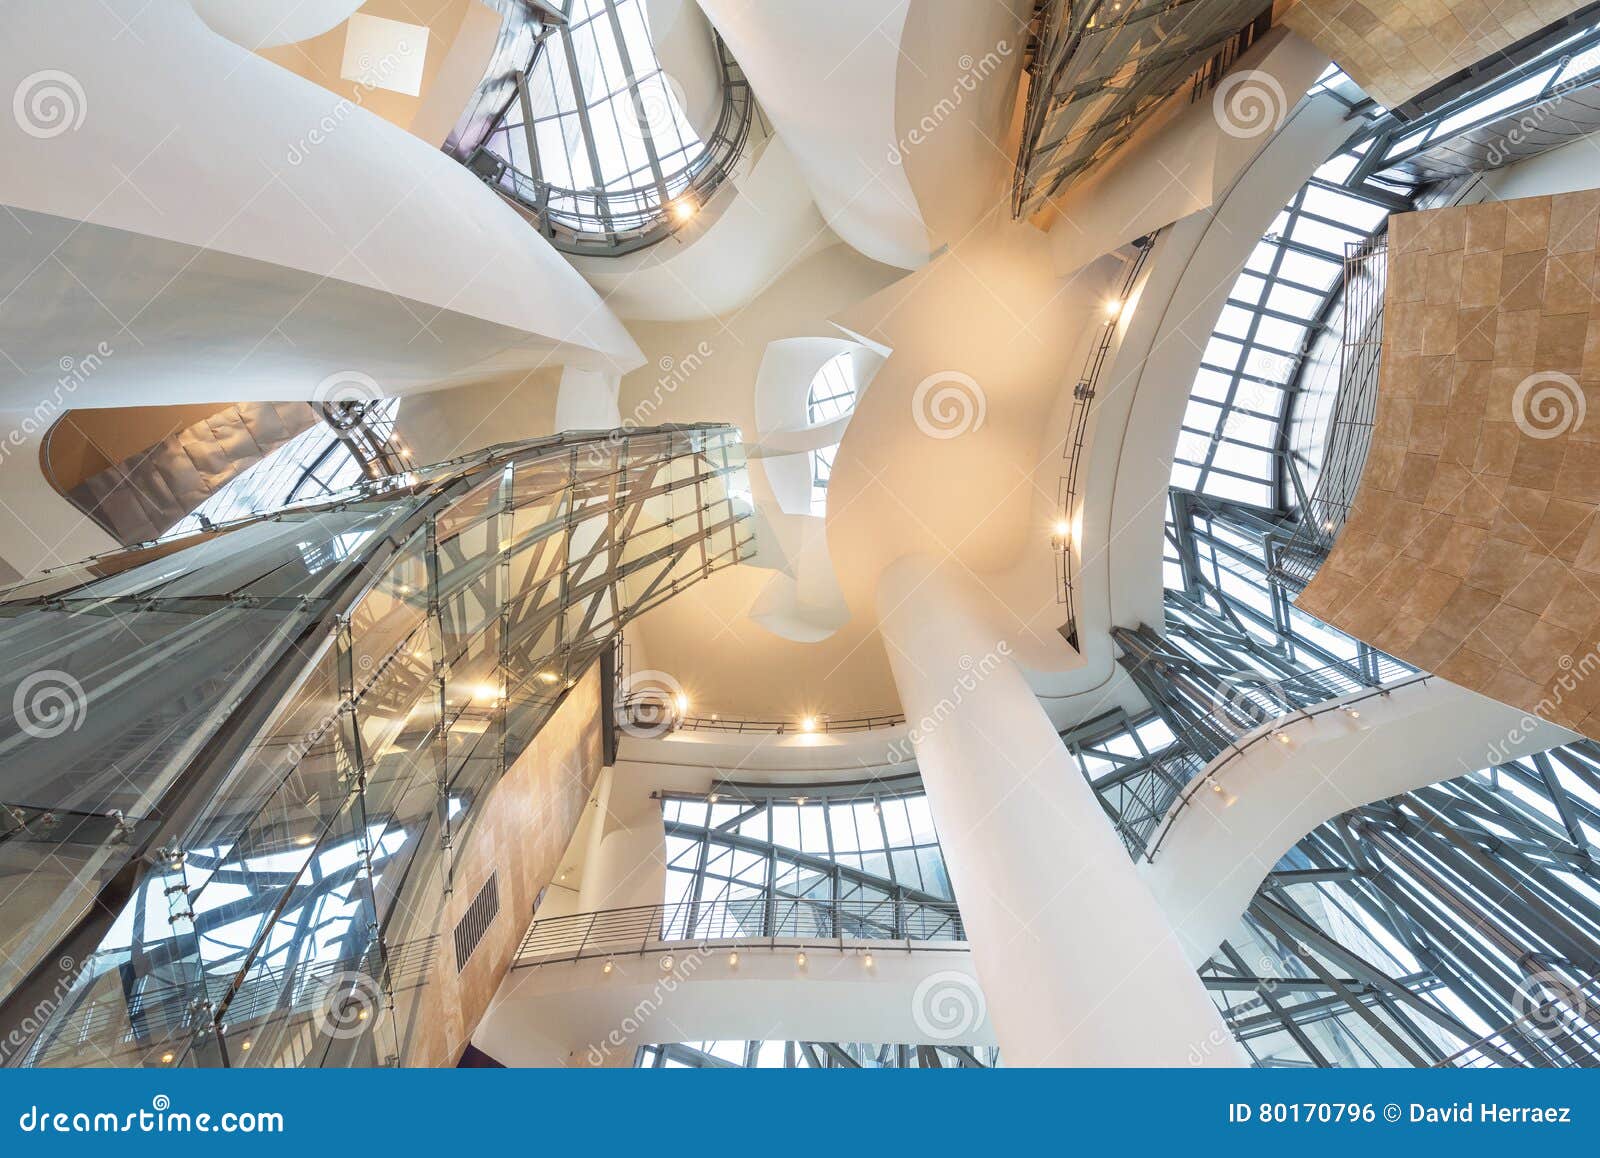 File:Guggenheim Museum interior, Bilbao, July 2010 (10).JPG - Wikimedia  Commons